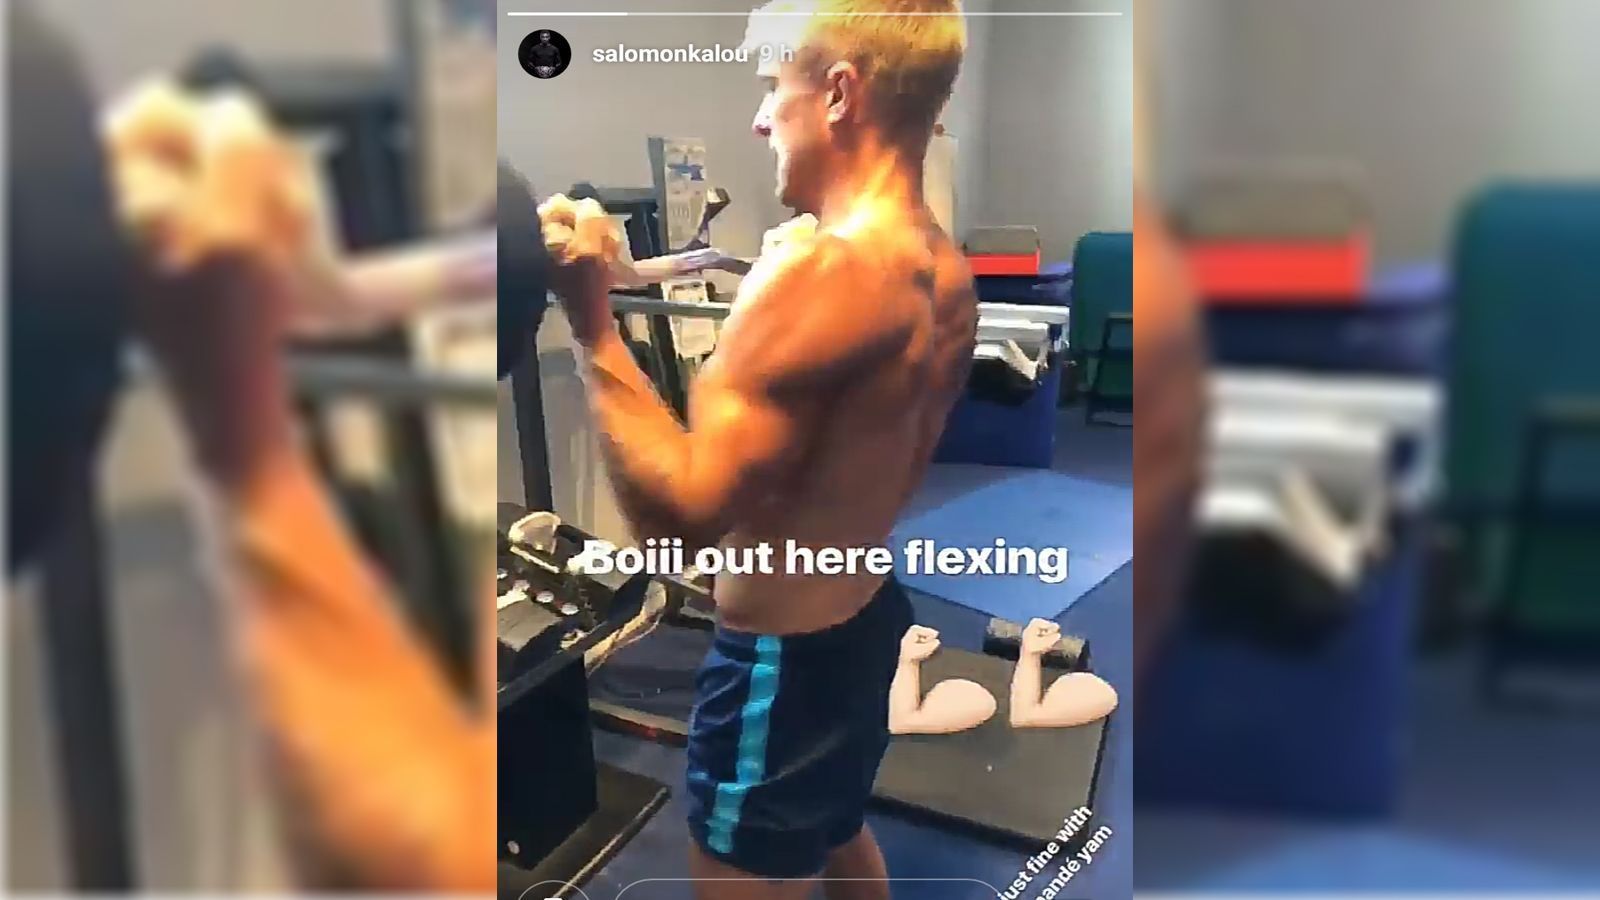 
                <strong>Per Skjelbred</strong><br>
                Damit Skjelbred so aussieht, wie er aussieht, betreibt der 32-Jährige intensives Muskeltraining, unter anderem mit Hanteln. Auch Teamkollege Salomon Kalou ist sicher beeindruckt, sonst hätte er ihn wohl nicht in seiner Instagram-Story erwähnt. 
              